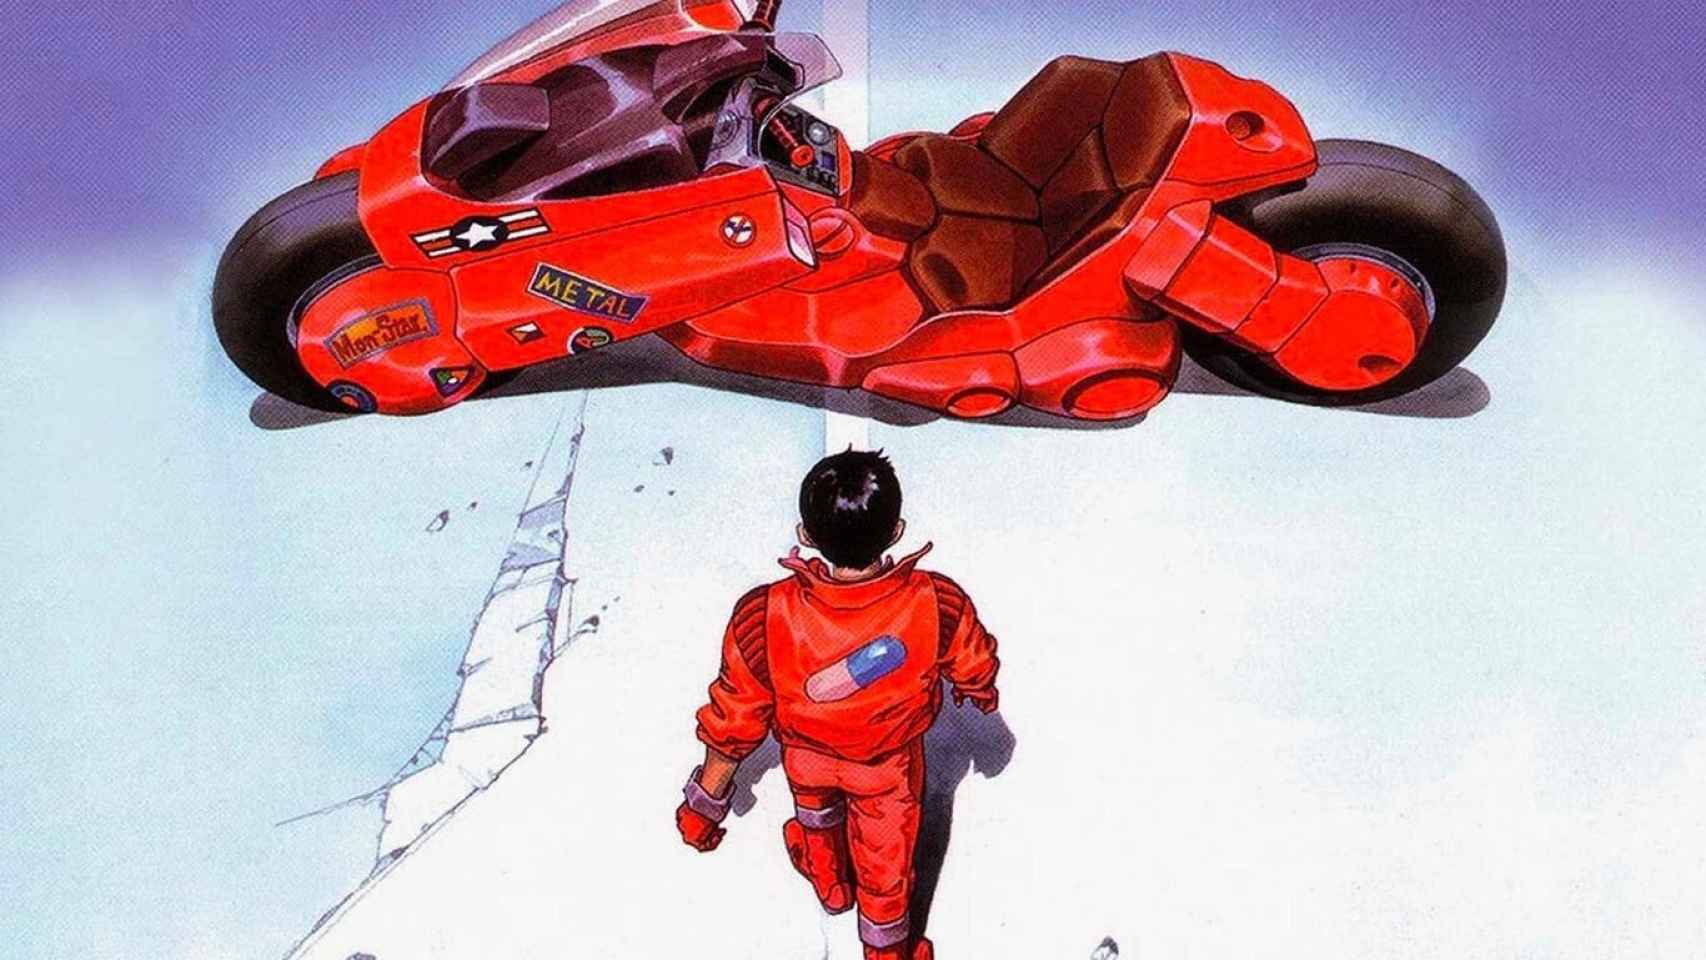 La deslumbrante moto roja del protagonista en 'Akira'